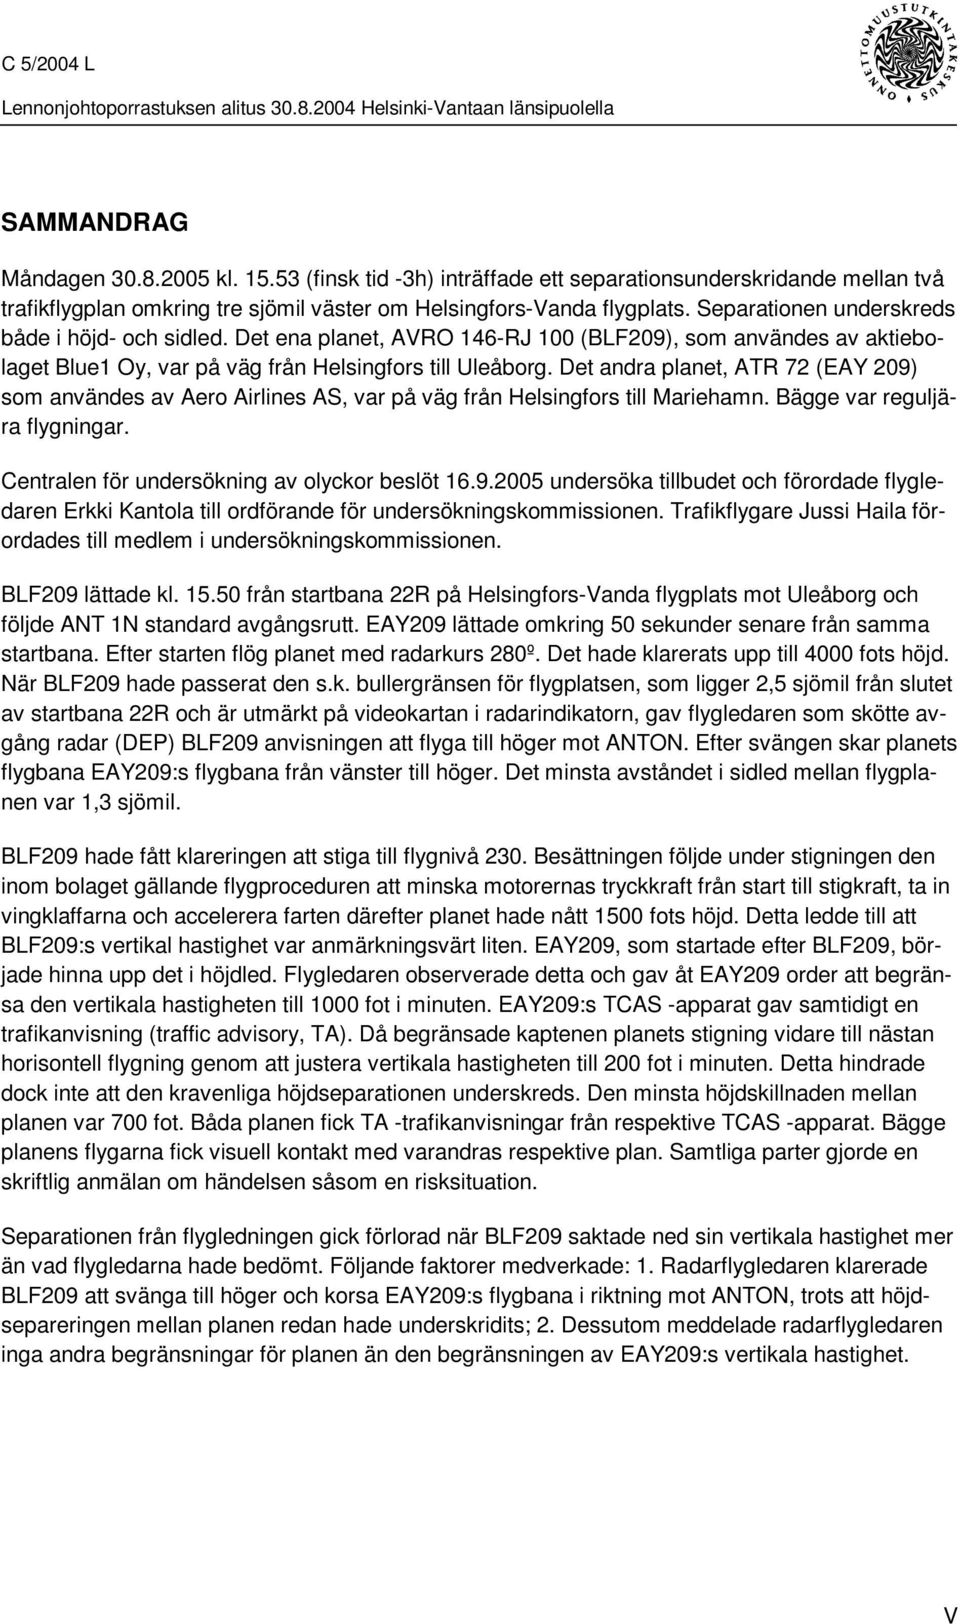 Det andra planet, ATR 72 (EAY 209) som användes av Aero Airlines AS, var på väg från Helsingfors till Mariehamn. Bägge var reguljära flygningar. Centralen för undersökning av olyckor beslöt 16.9.2005 undersöka tillbudet och förordade flygledaren Erkki Kantola till ordförande för undersökningskommissionen.